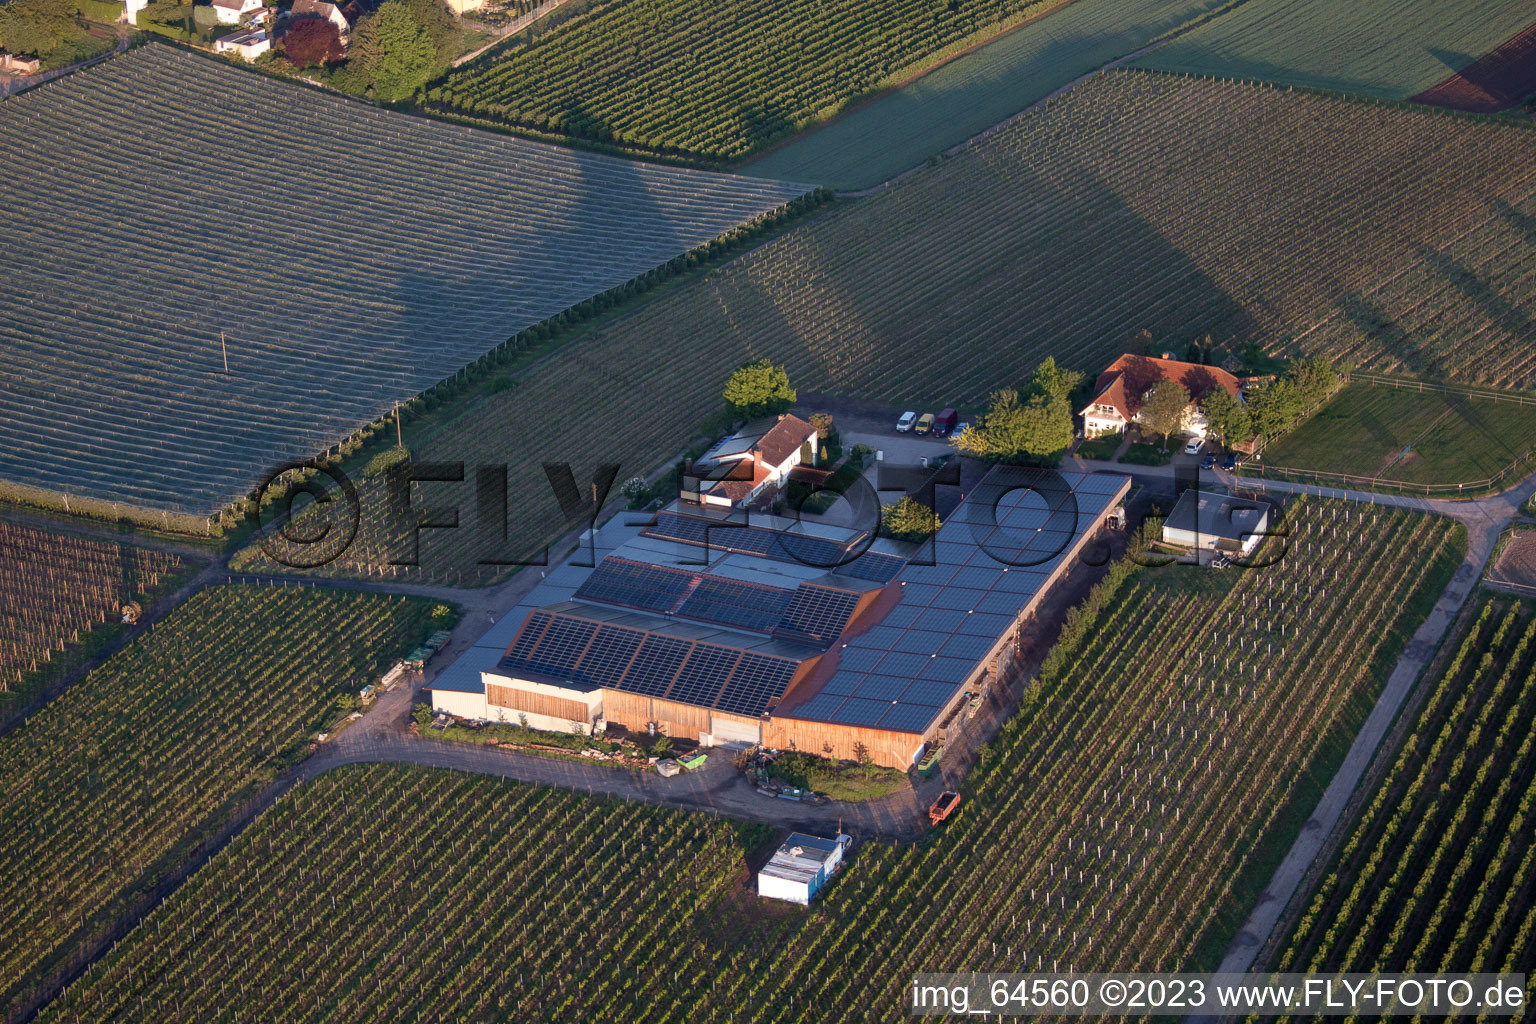 Drohnenbild von Impflingen im Bundesland Rheinland-Pfalz, Deutschland